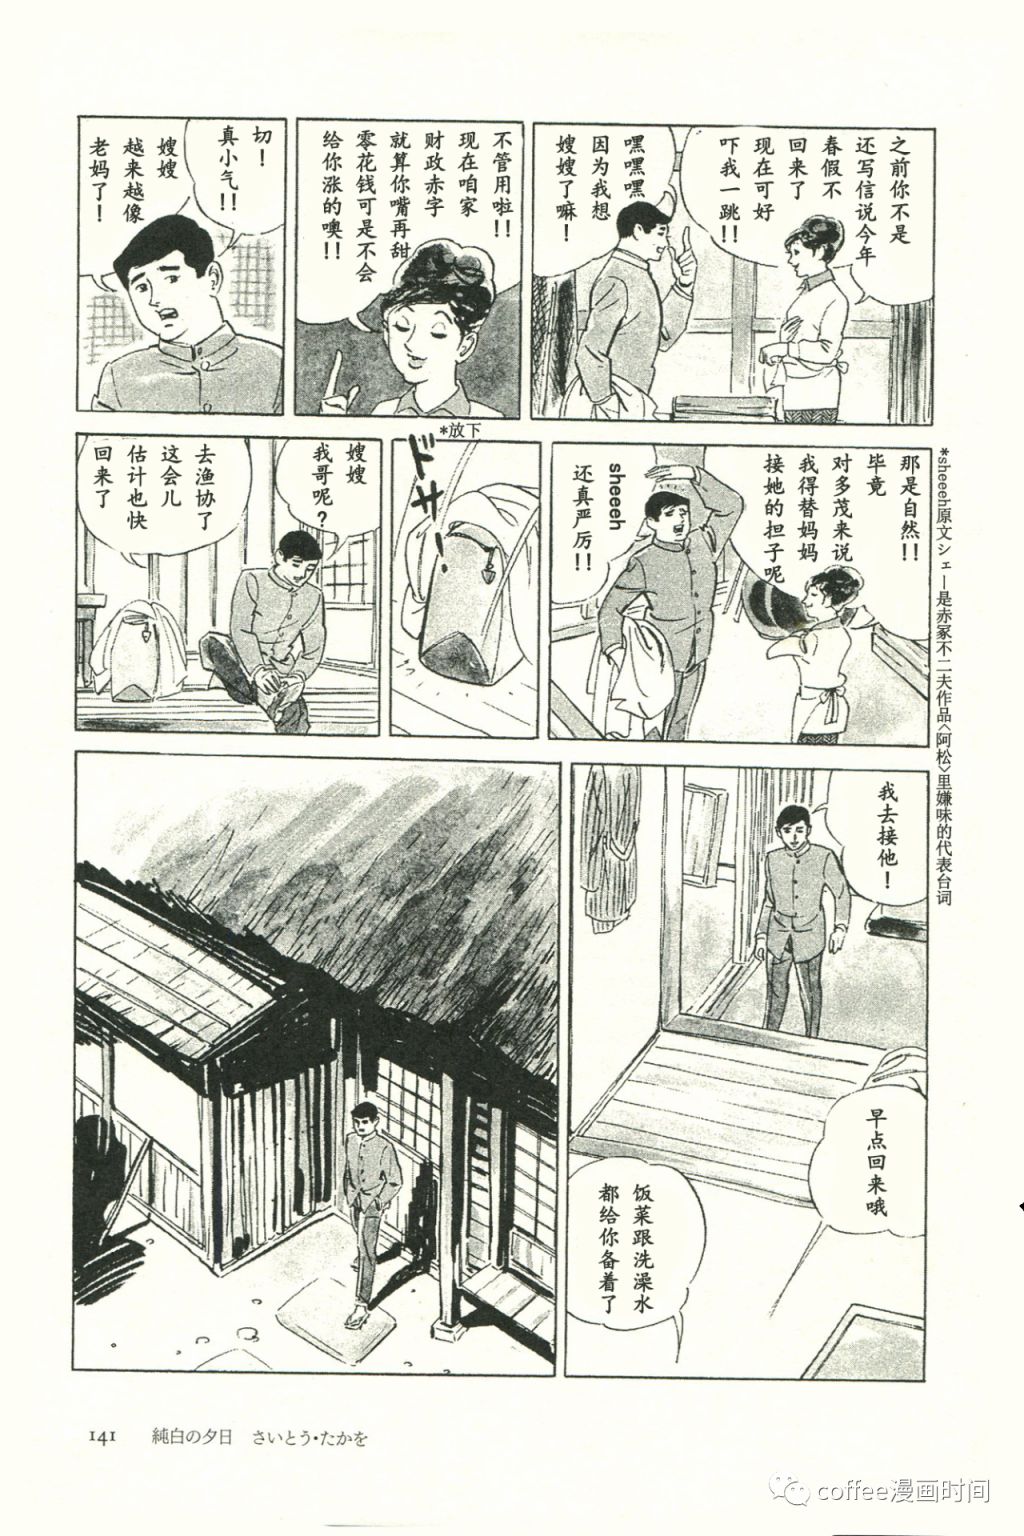 日本短篇漫畫傑作集 - 齋藤隆夫《純白的夕陽》 - 2